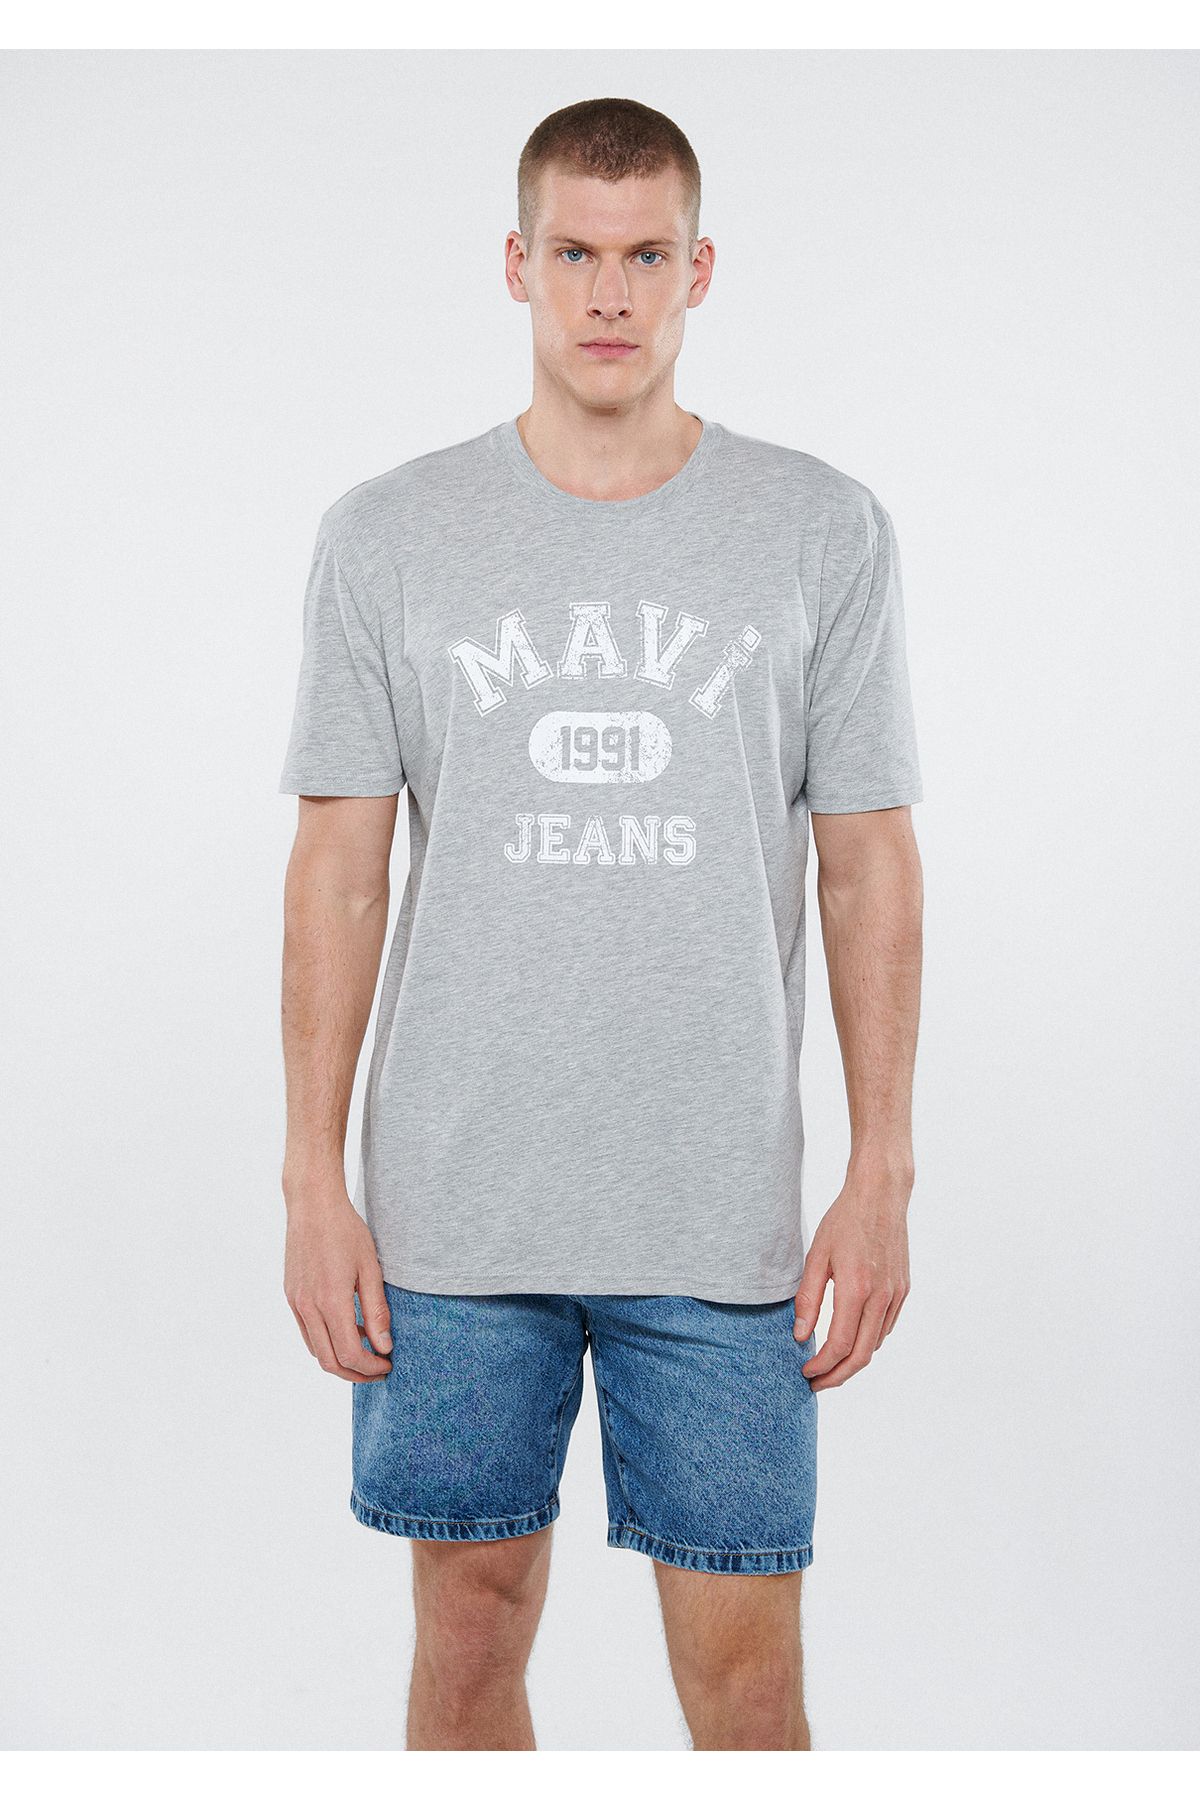 Mavi آرم چاپ شده تی شرت خاکستری تناسب / برش راحت 067140-80196